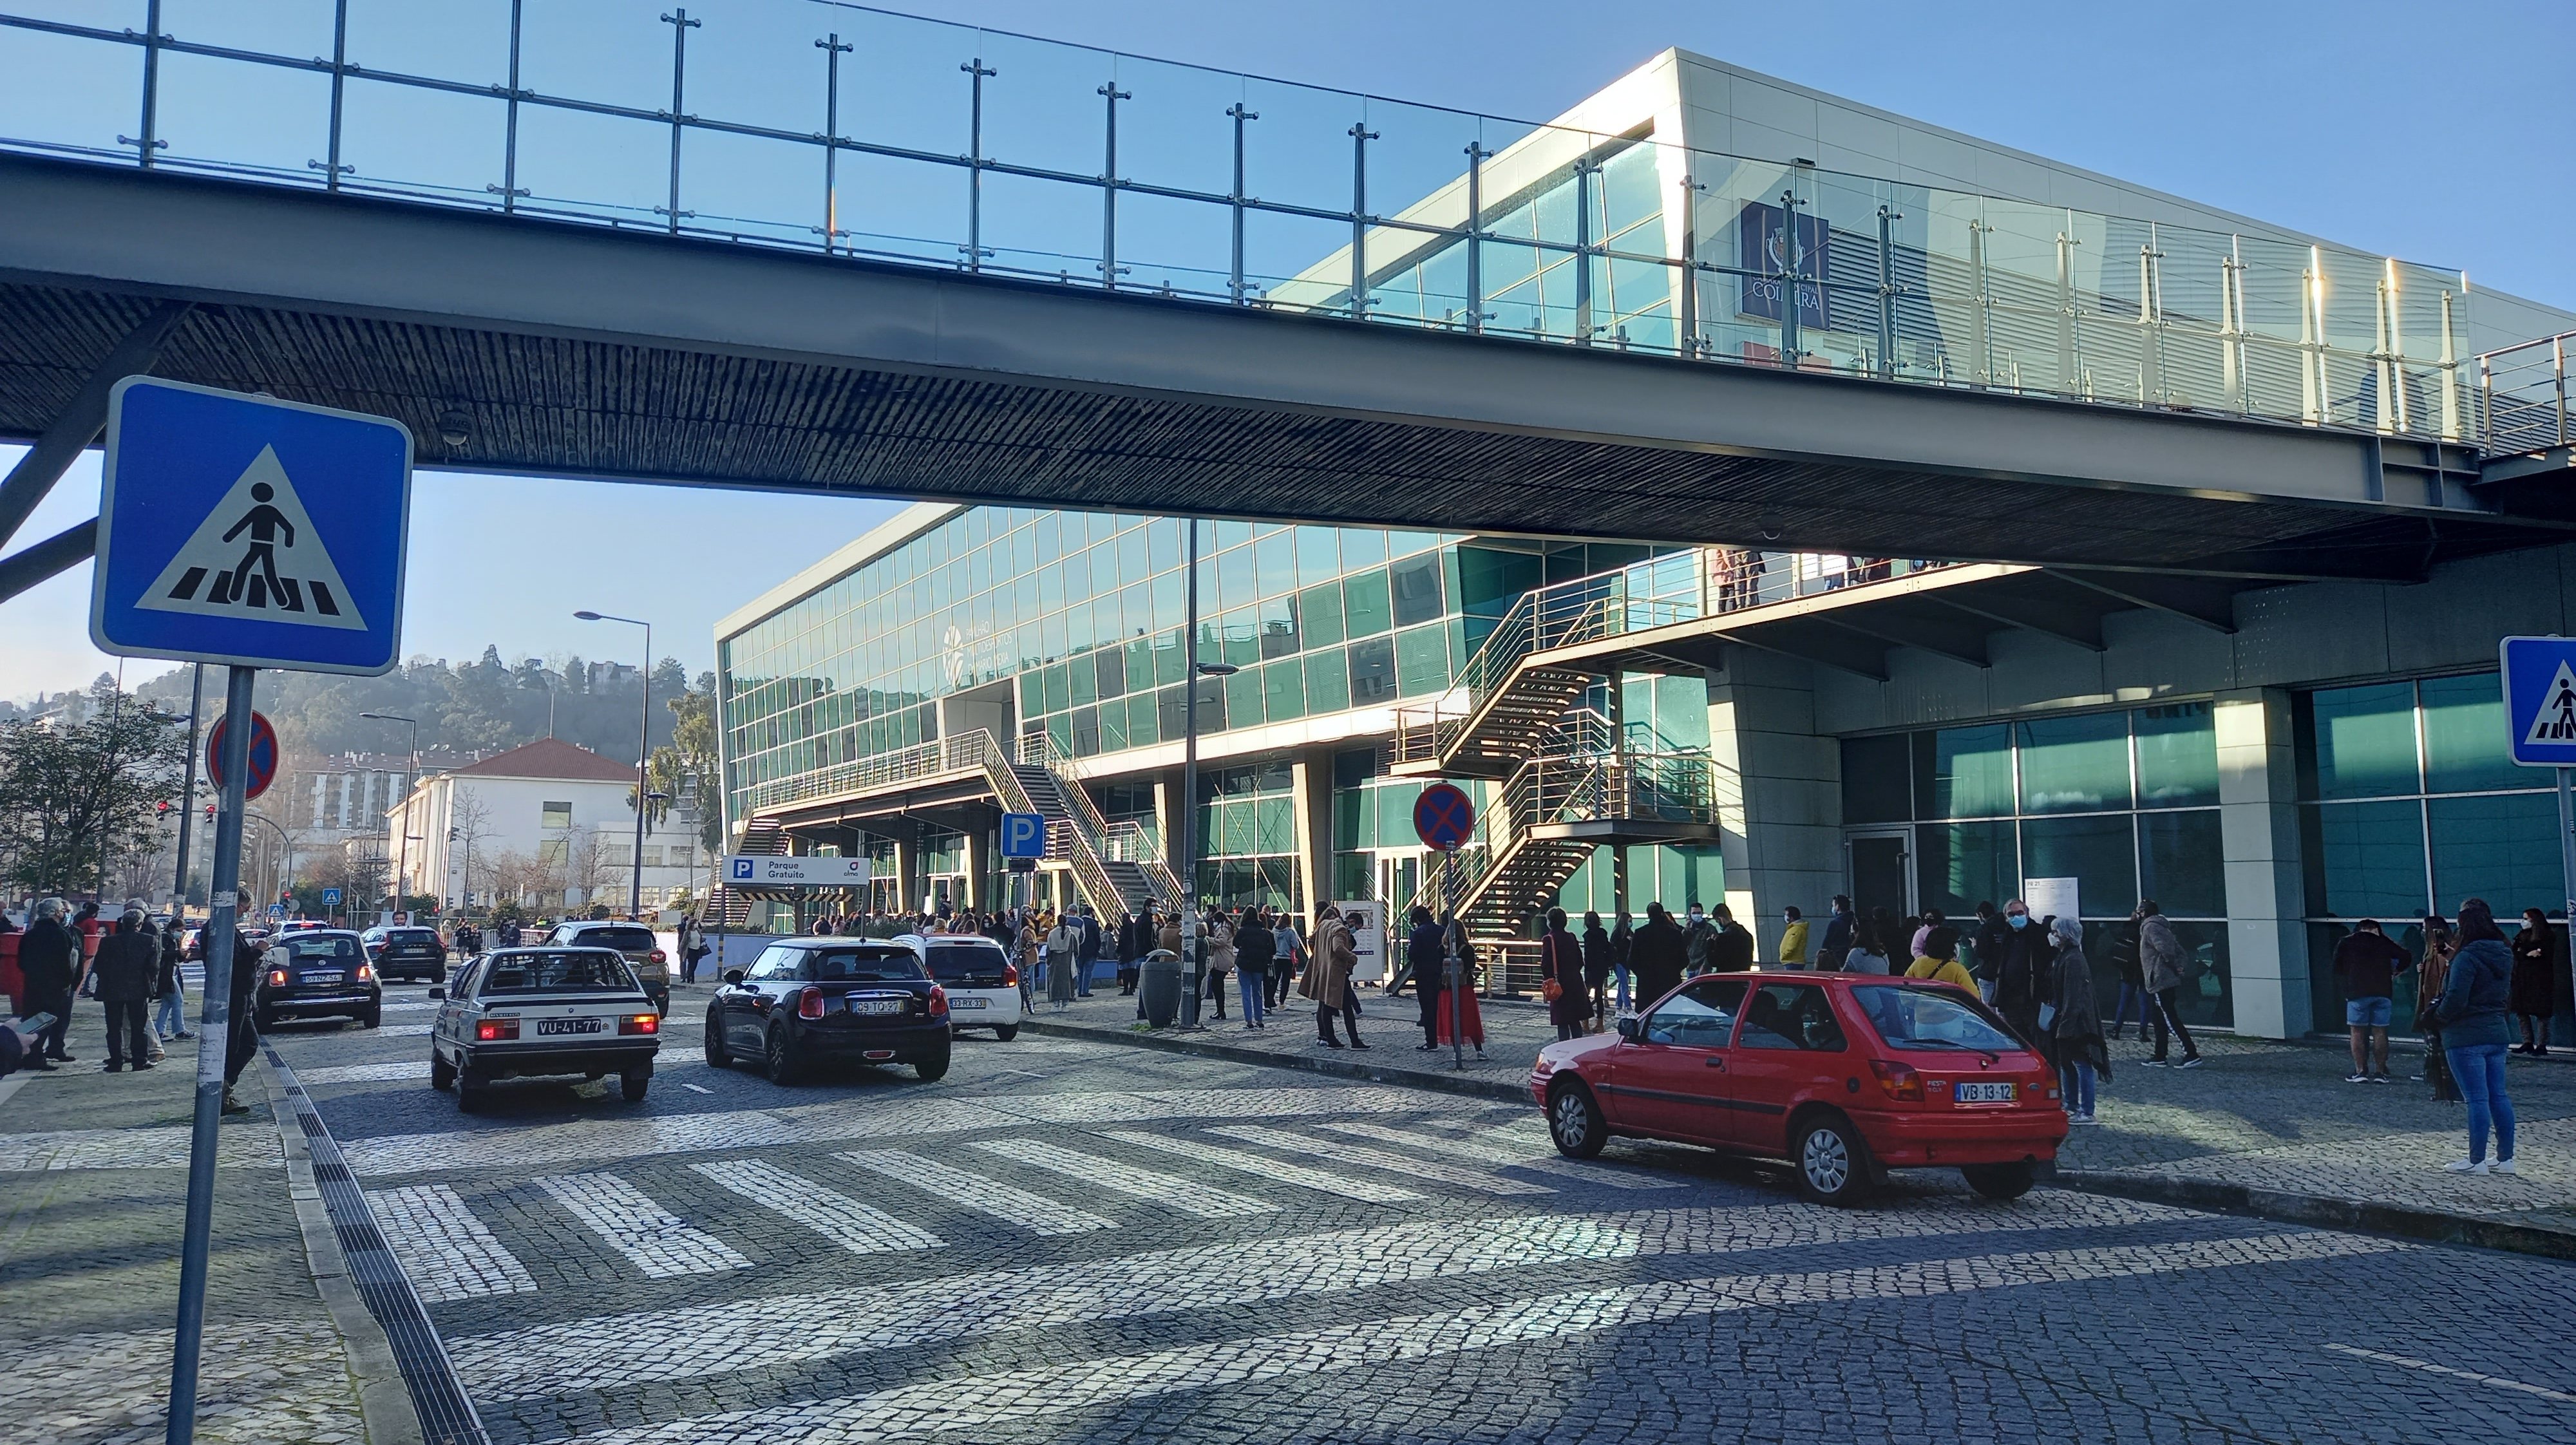 Nos últimos sete anos, o município de Coimbra reforçou a frota dos SMTUC com 79 viaturas